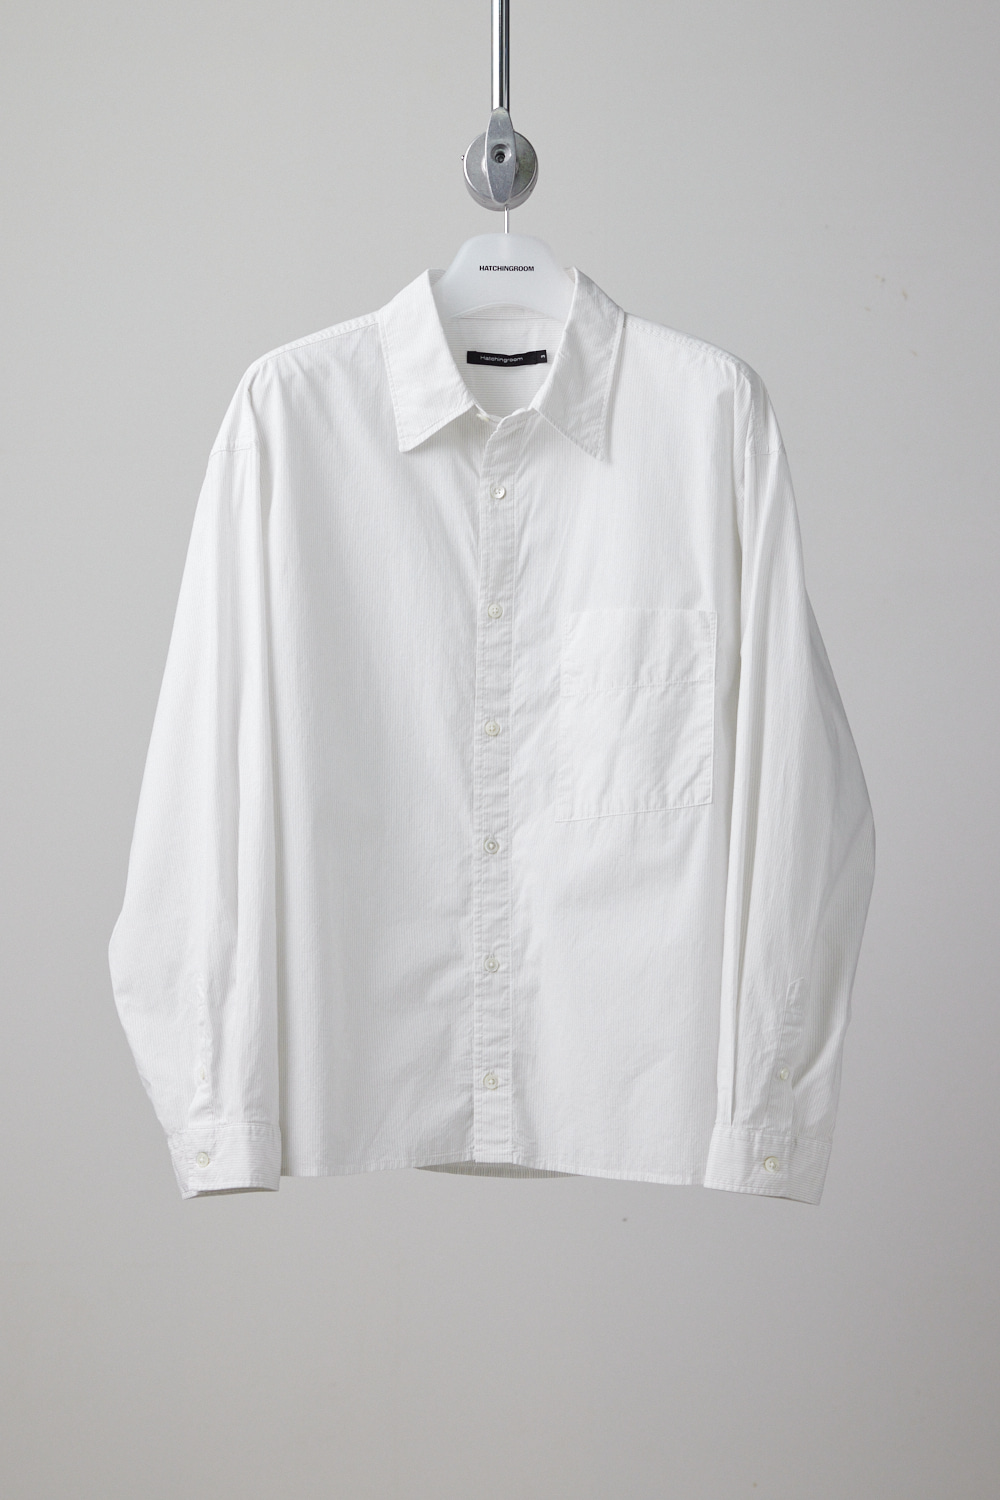 Crop Shirt Pin Stripe White